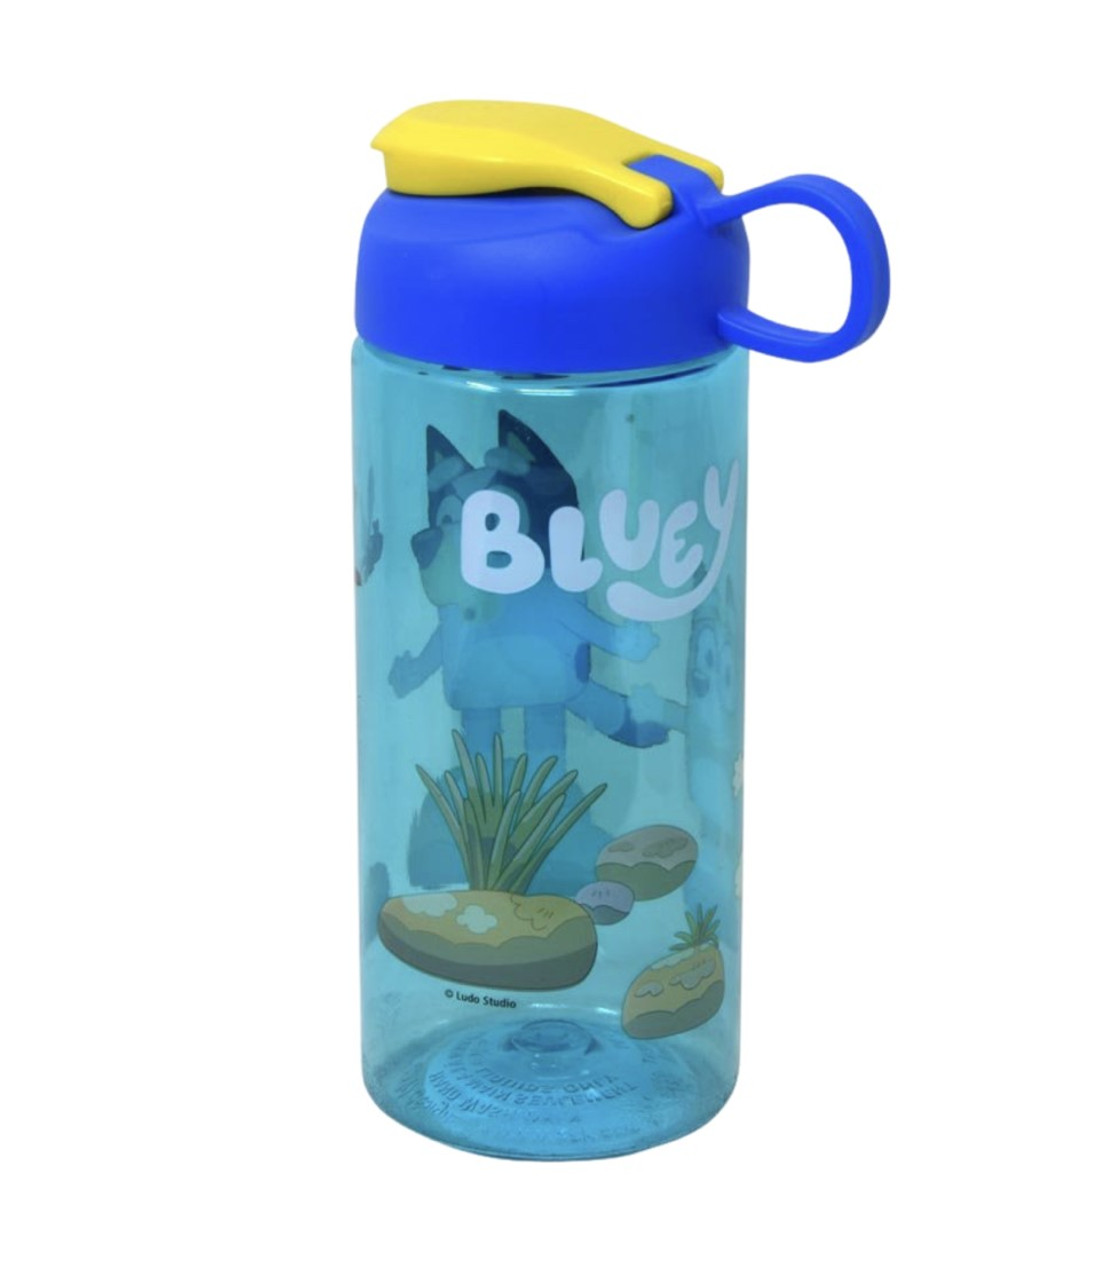 Bluey: 16 oz. Water Bottle